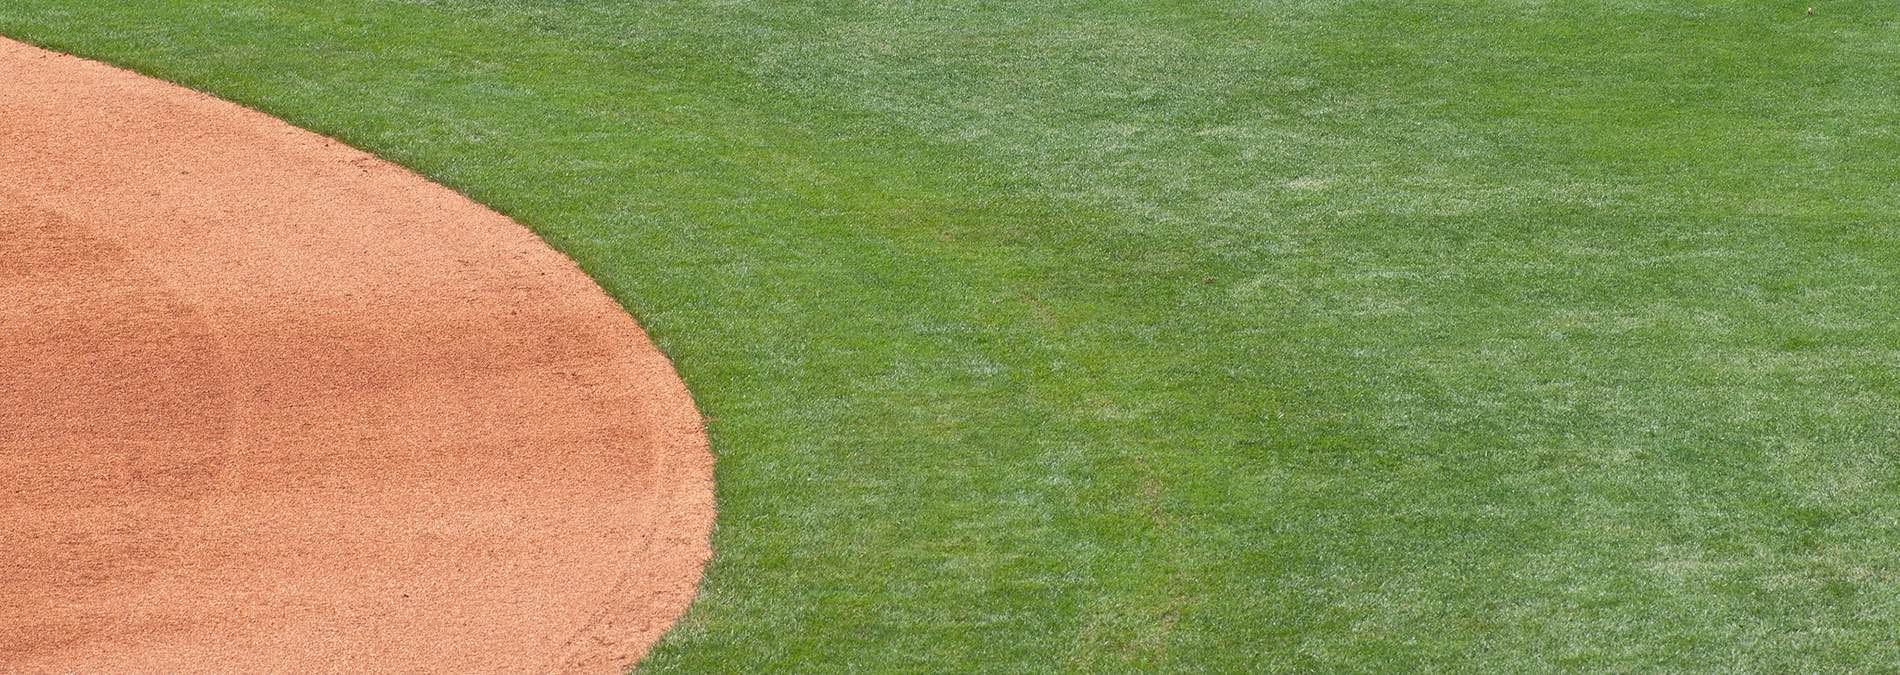 Baseball diamond grass